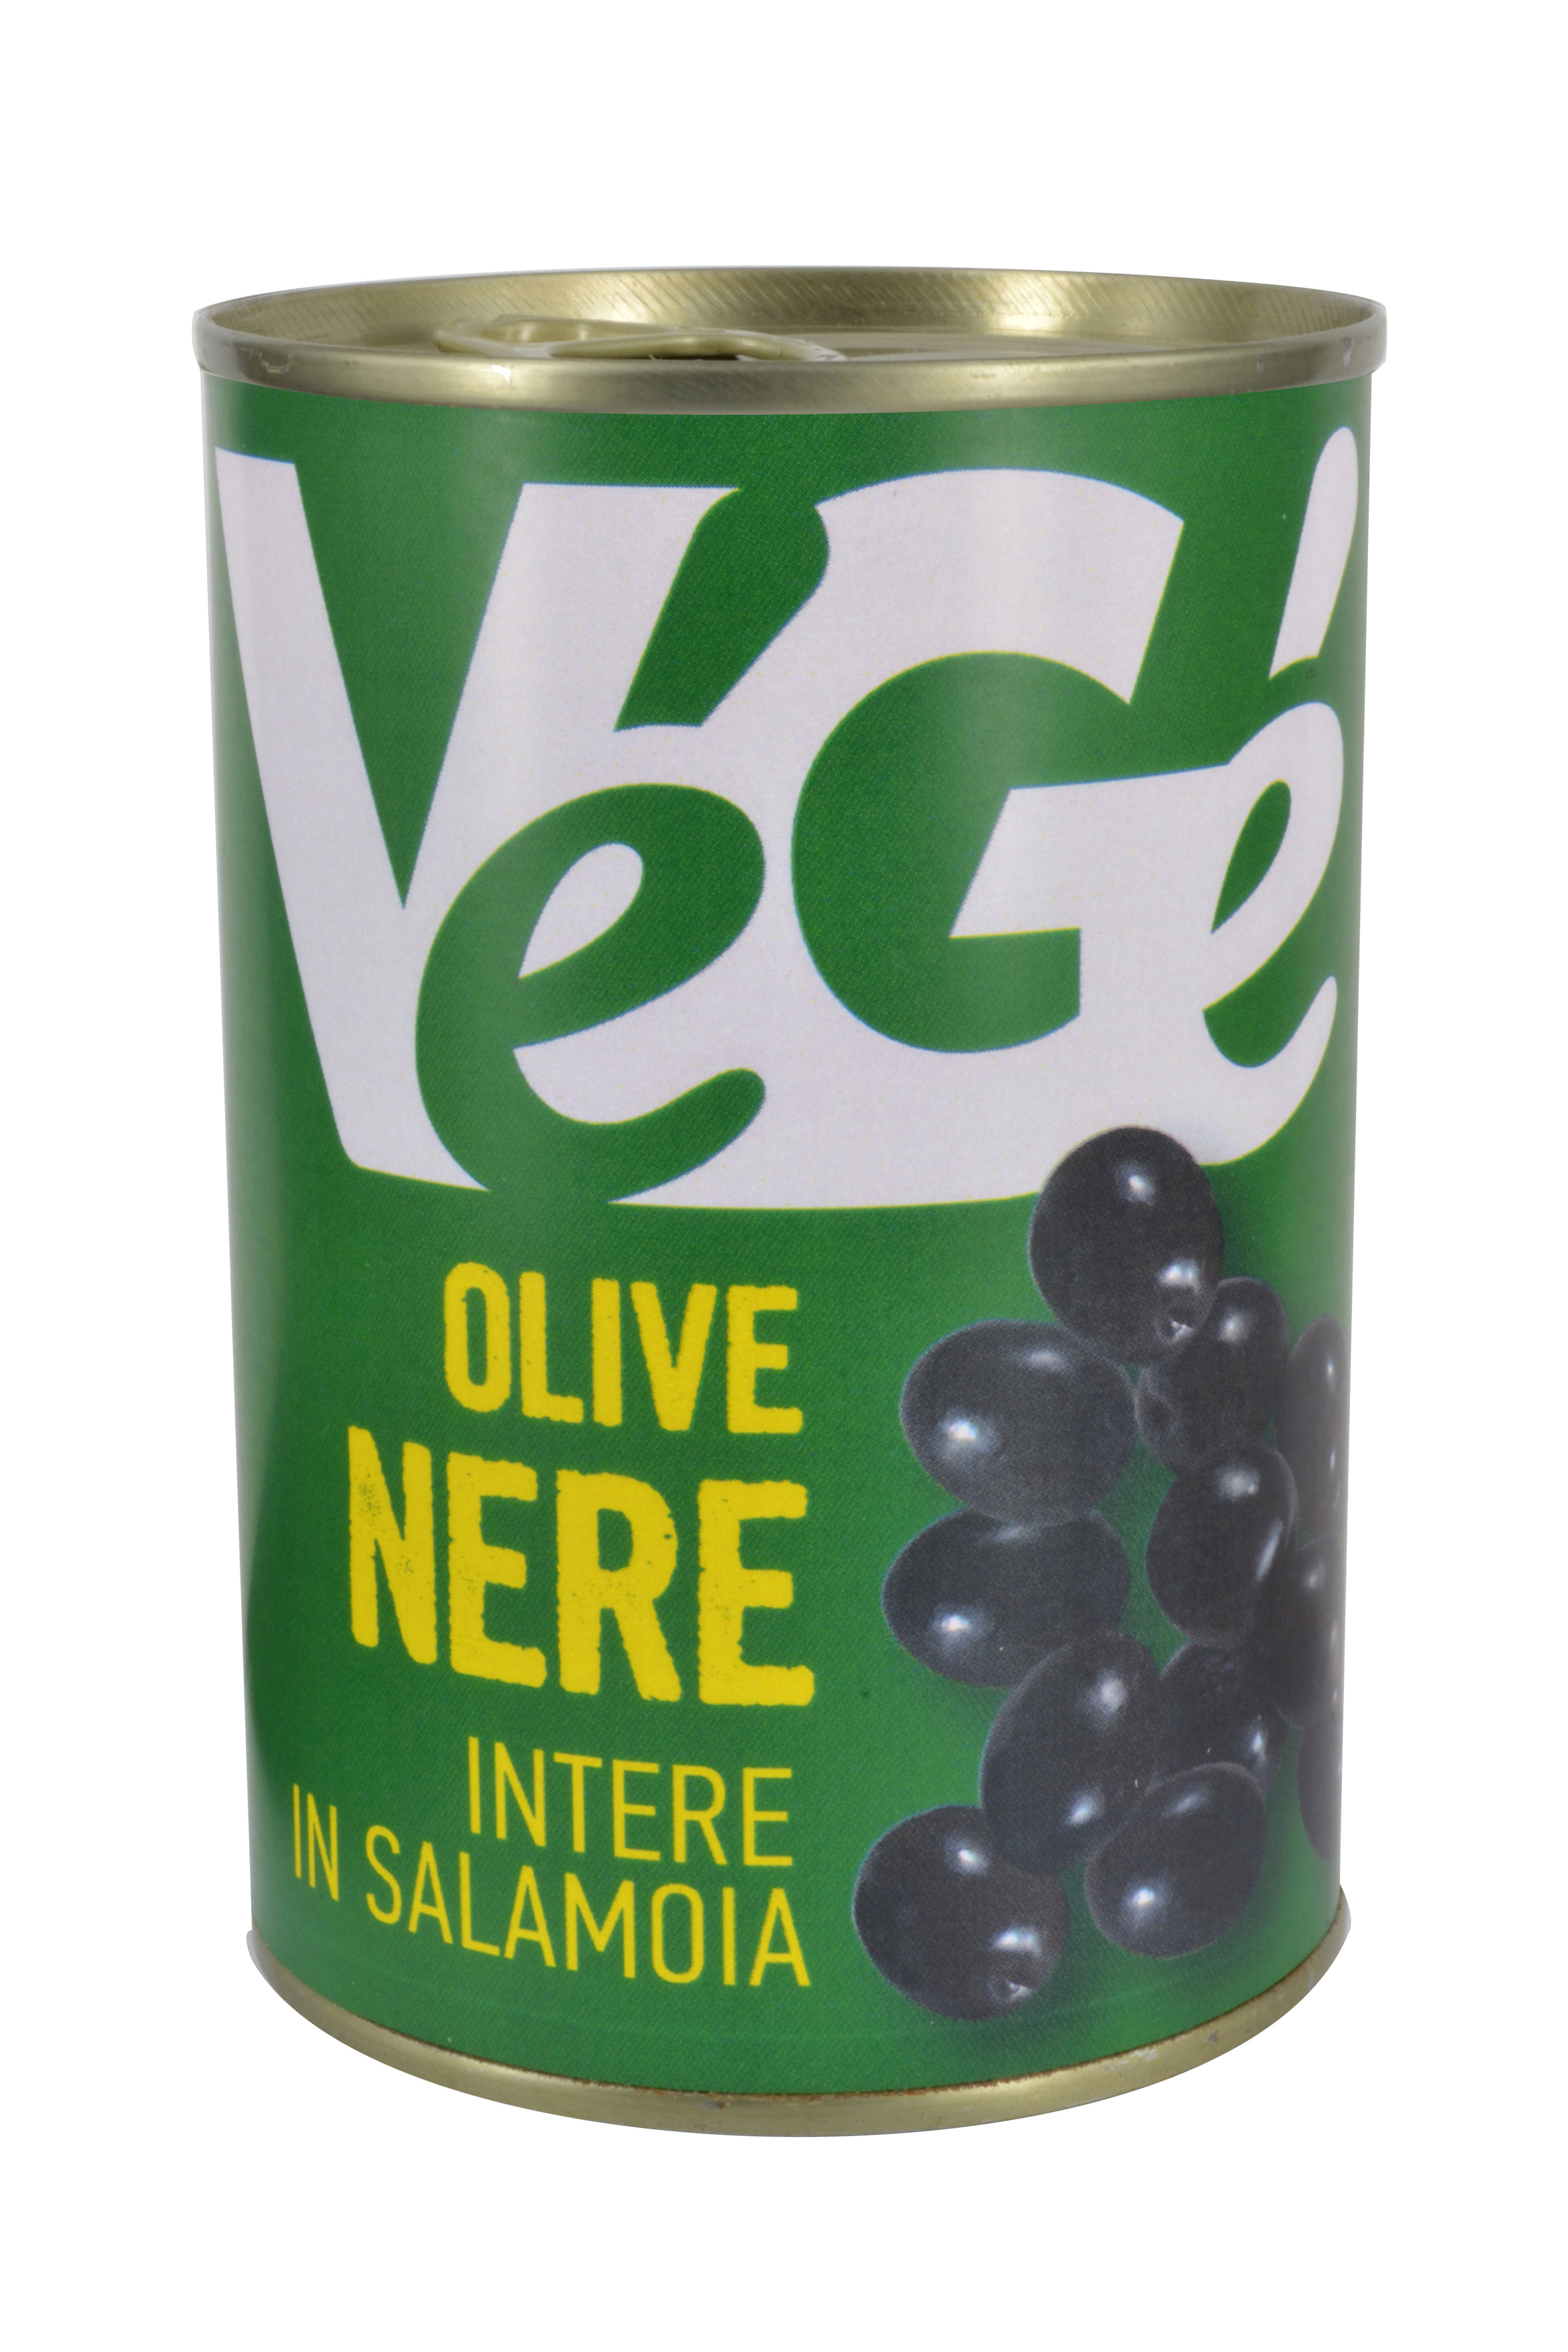 Olive nere intere in salamoia Vegé GDO (Grande Distribuzione Organizzata)